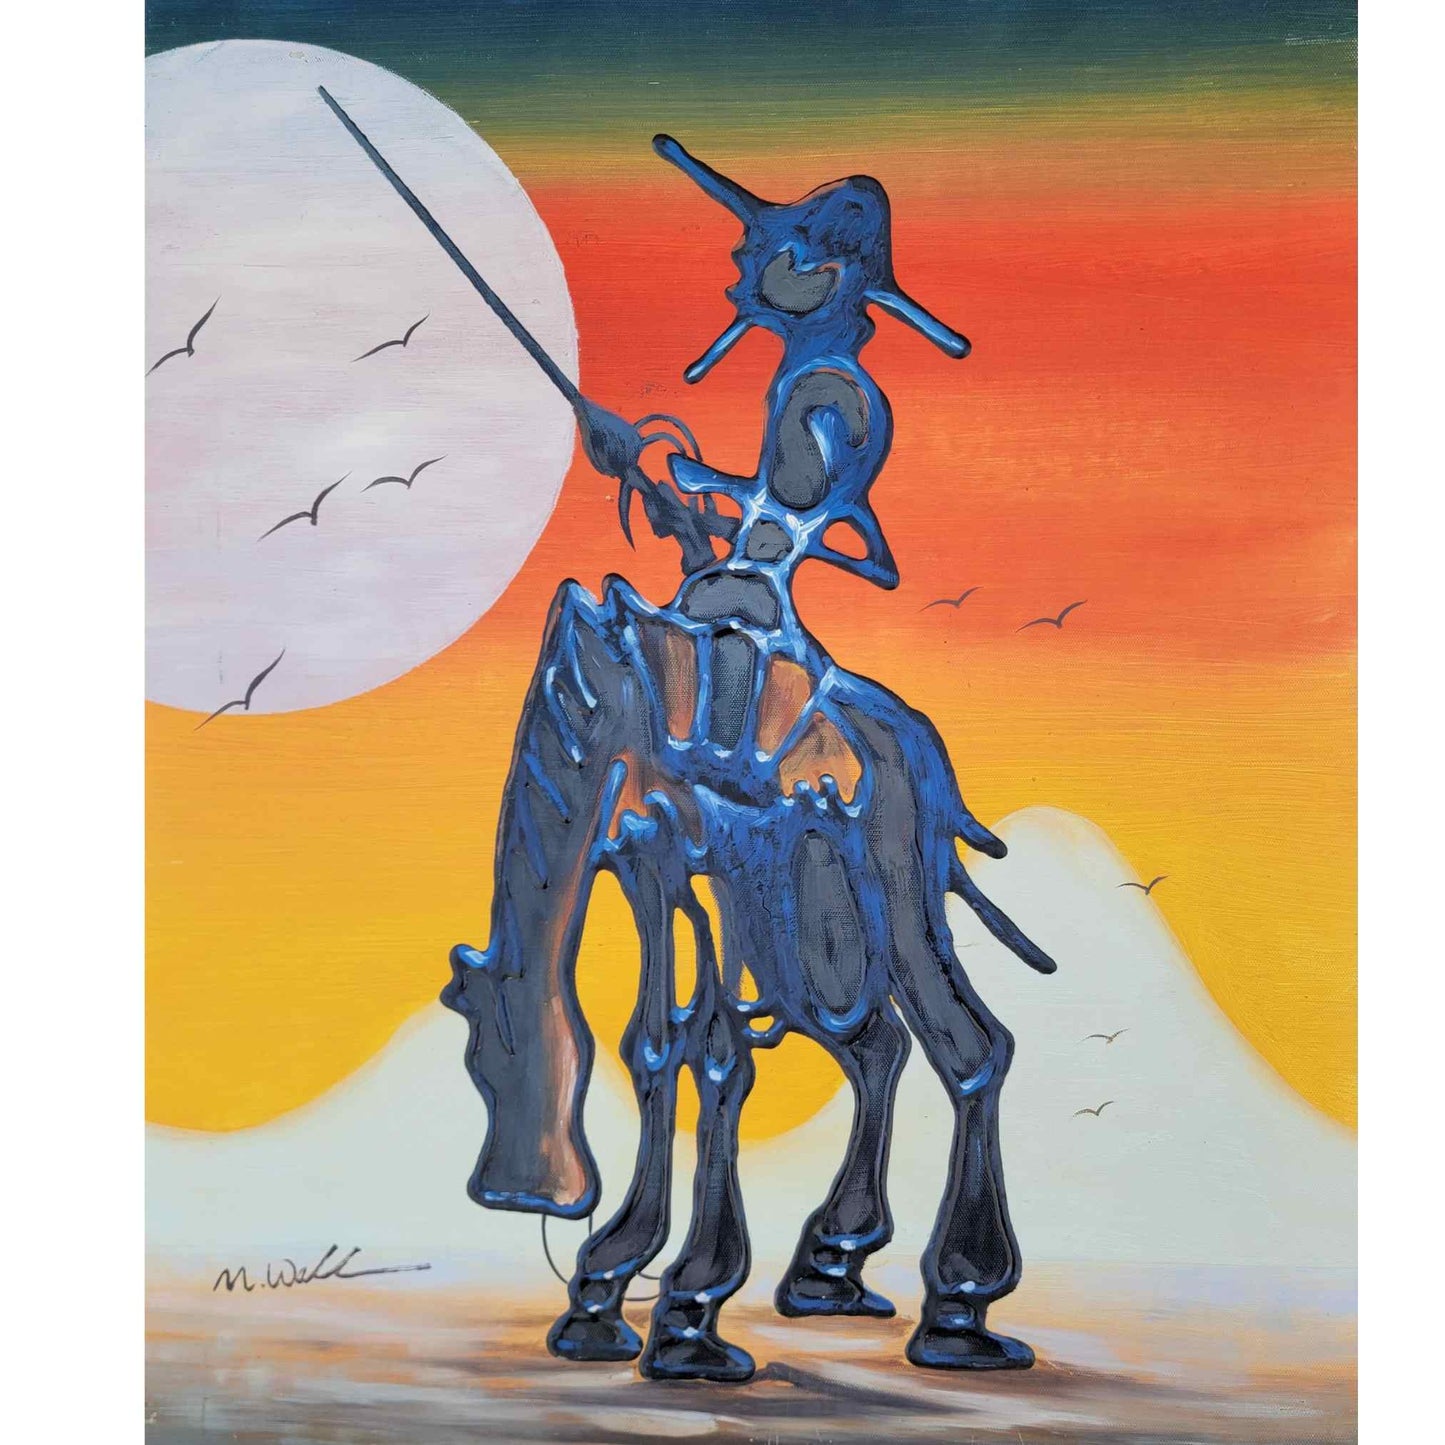 Cuadro El Quijote y Sancho 50X60 cm [2 piezas]